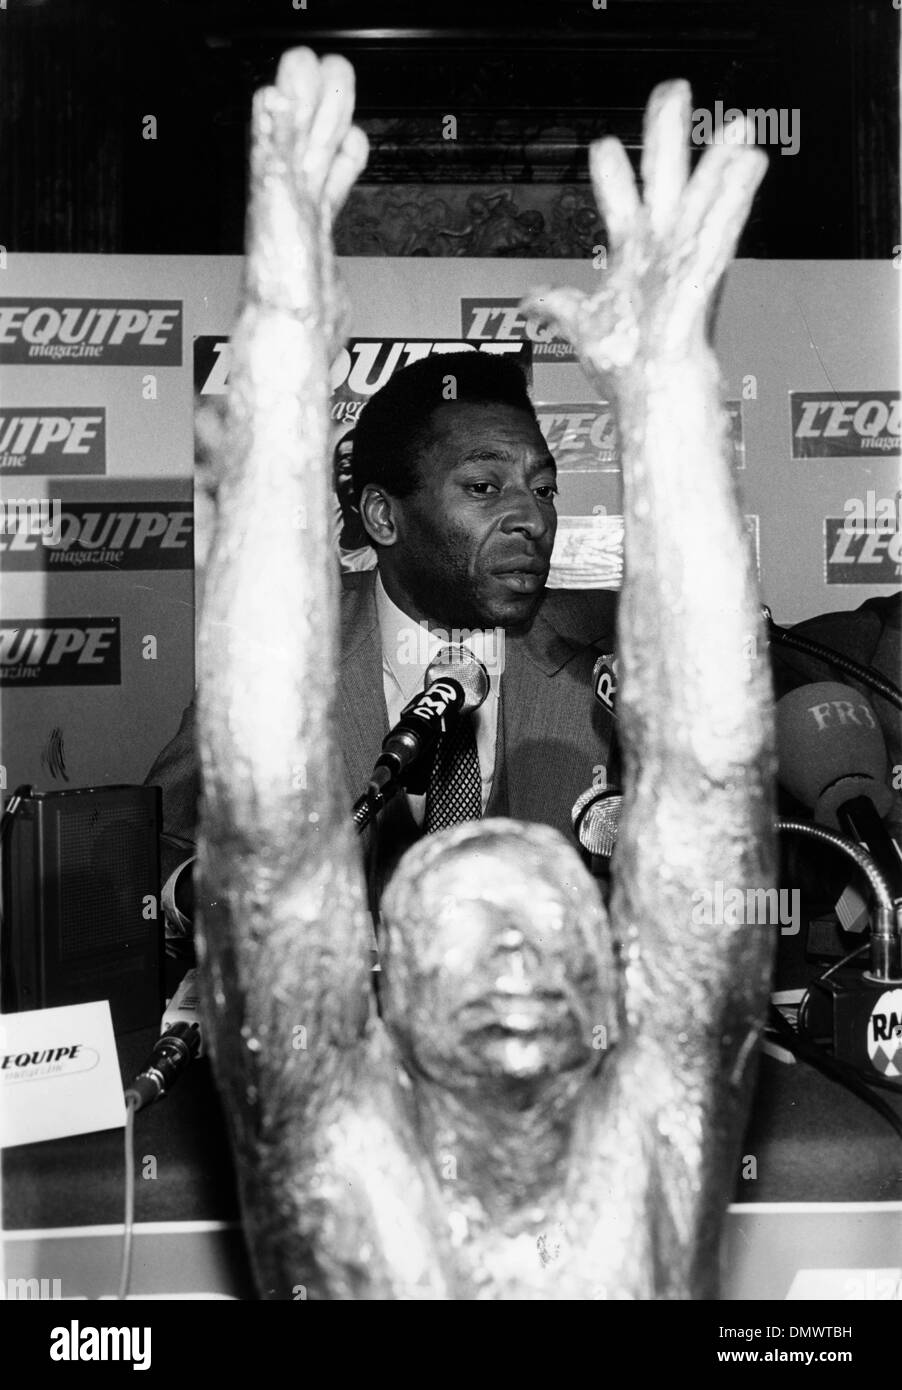 25 maggio 1981 - Parigi, Francia - calcio brasiliano player EDSON NASCIMENTO 'PELE" in occasione di una conferenza stampa presso il Grand Hotel parigino. Davanti a lui è una statua di se stesso. (Credito Immagine: © Keystone Pictures USA/ZUMAPRESS.com) Foto Stock